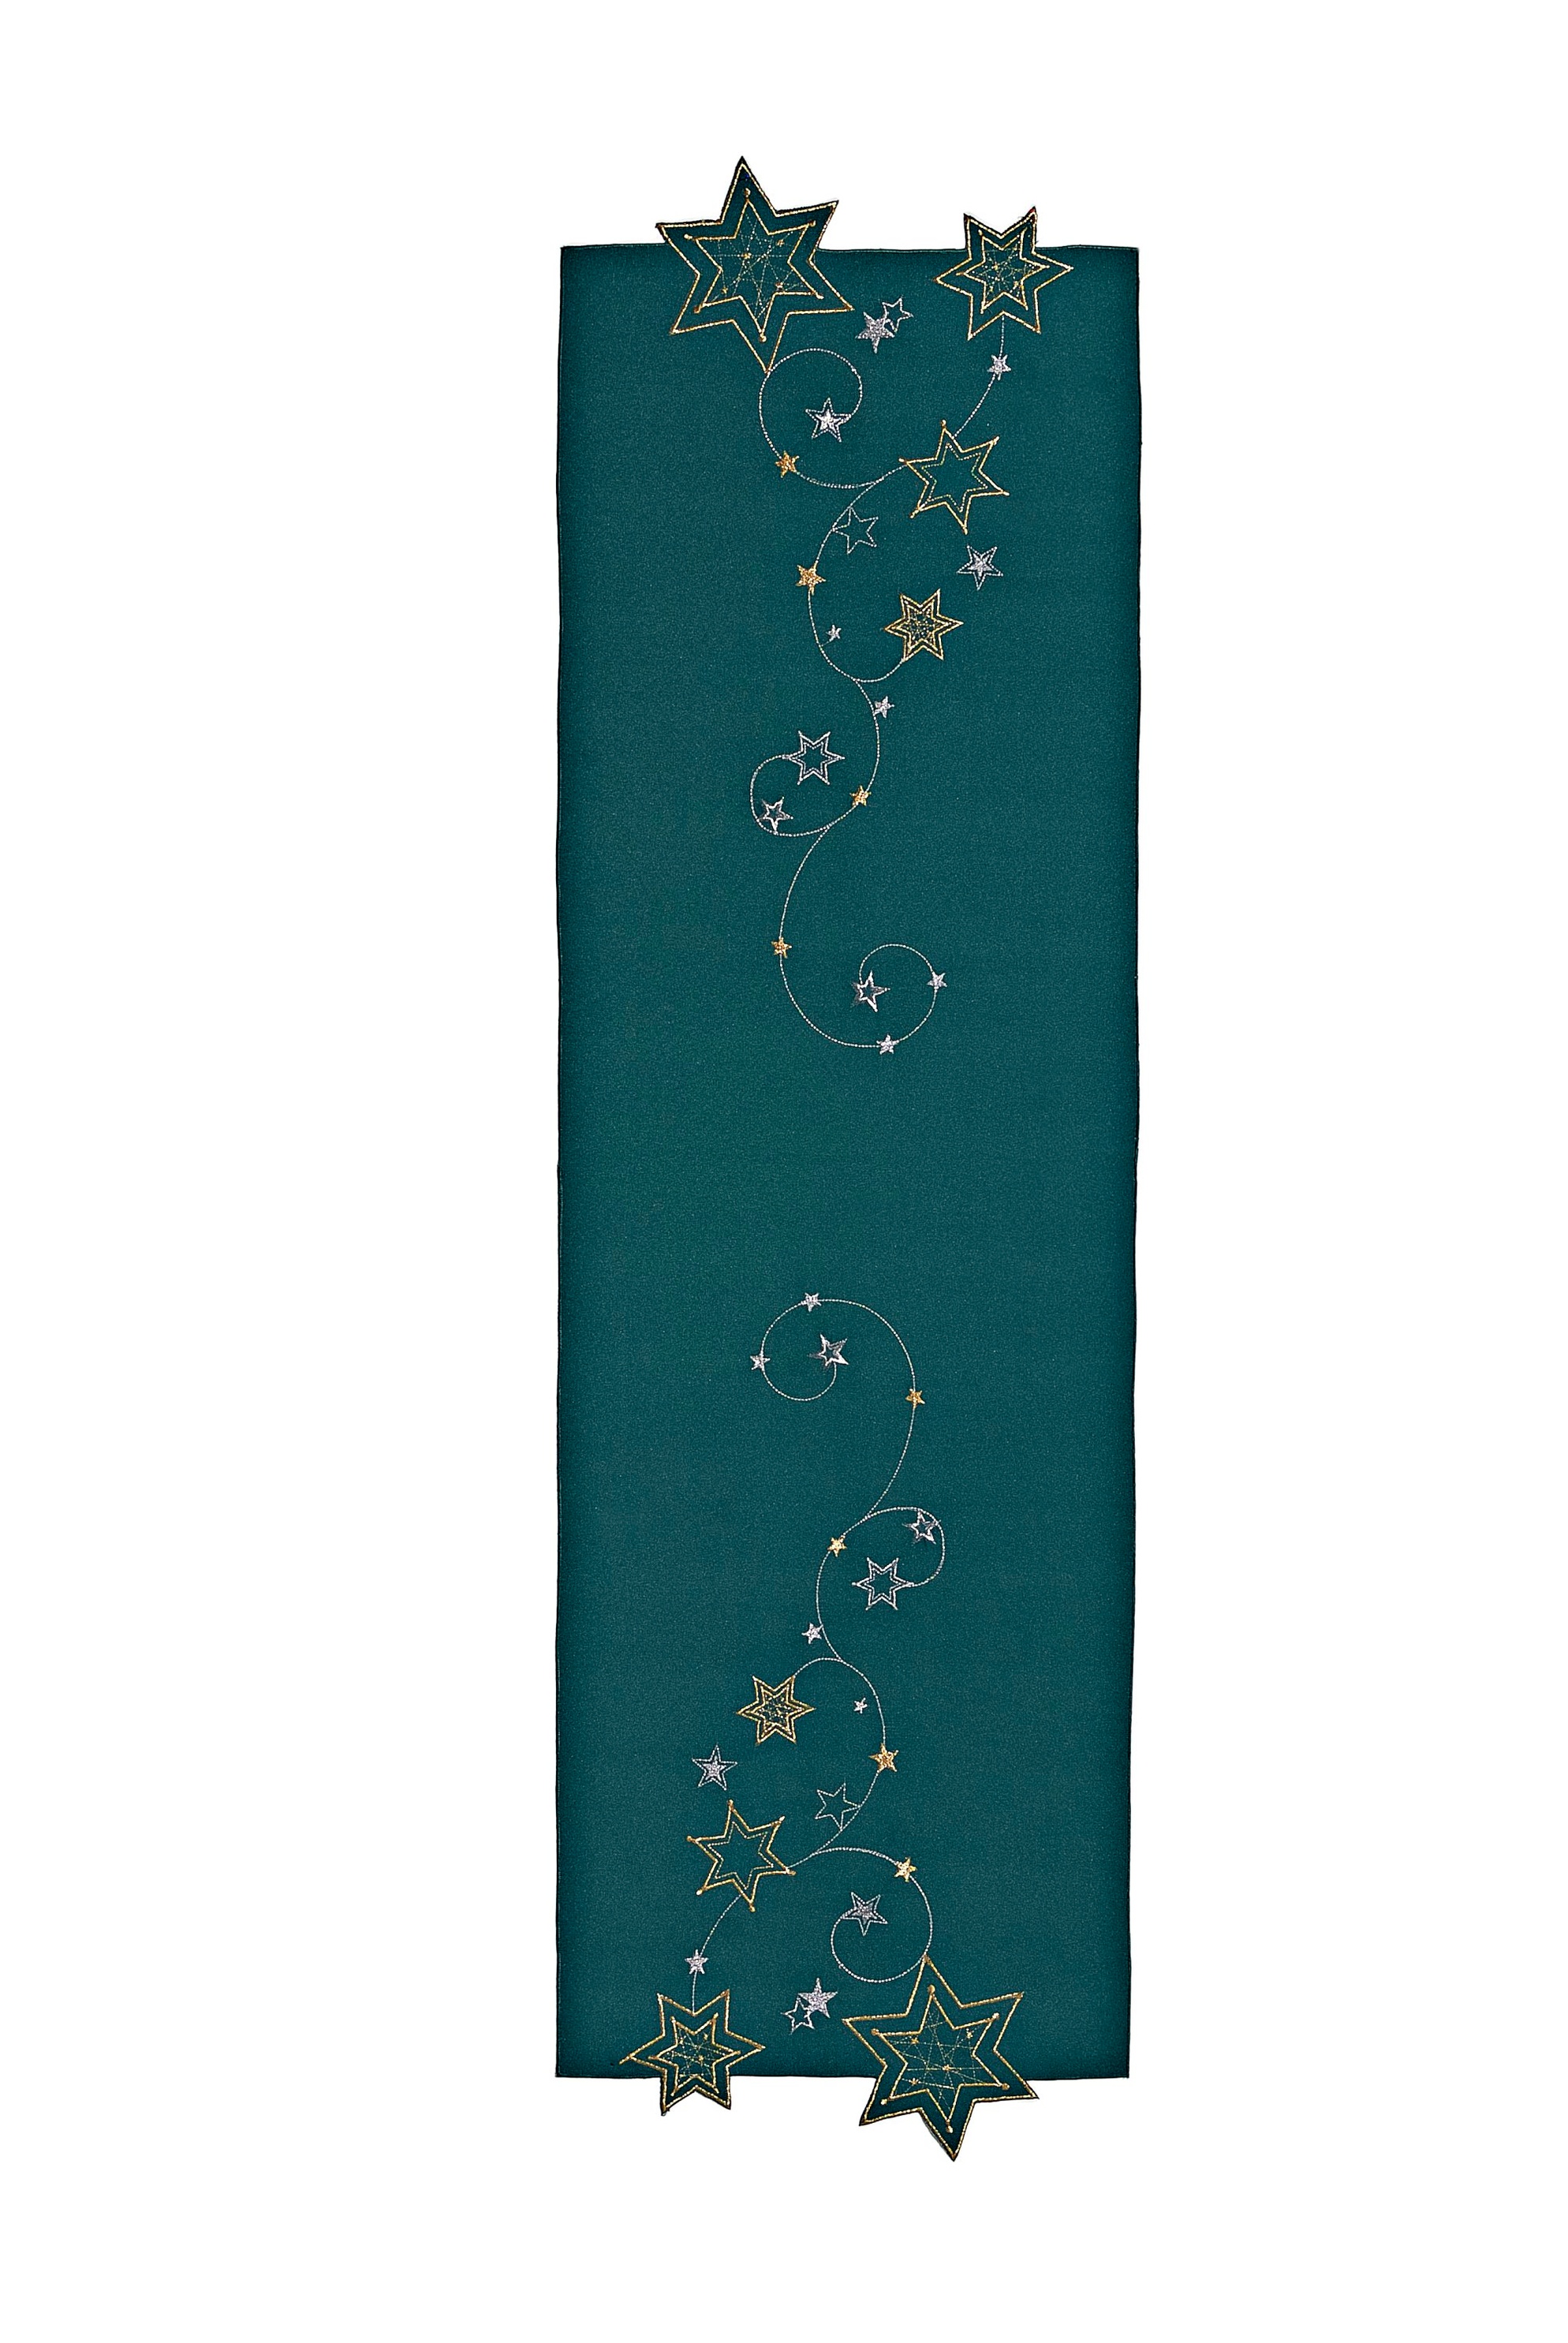 Tischläufer Sternenglanz, grün 40x140 cm bestellen